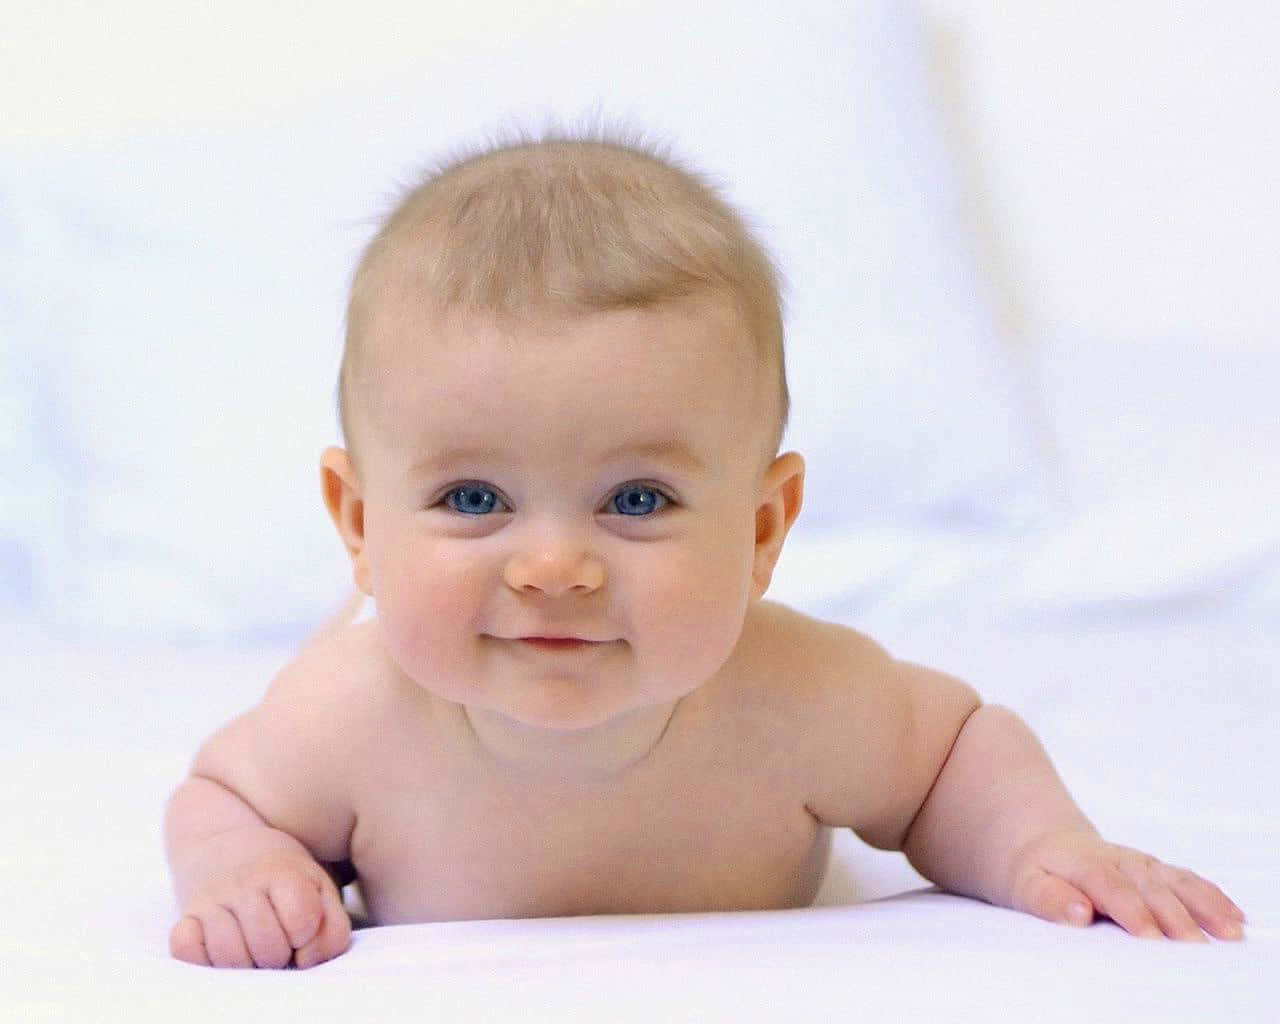 Imagende Un Bebé De Ojos Azules Sonriendo